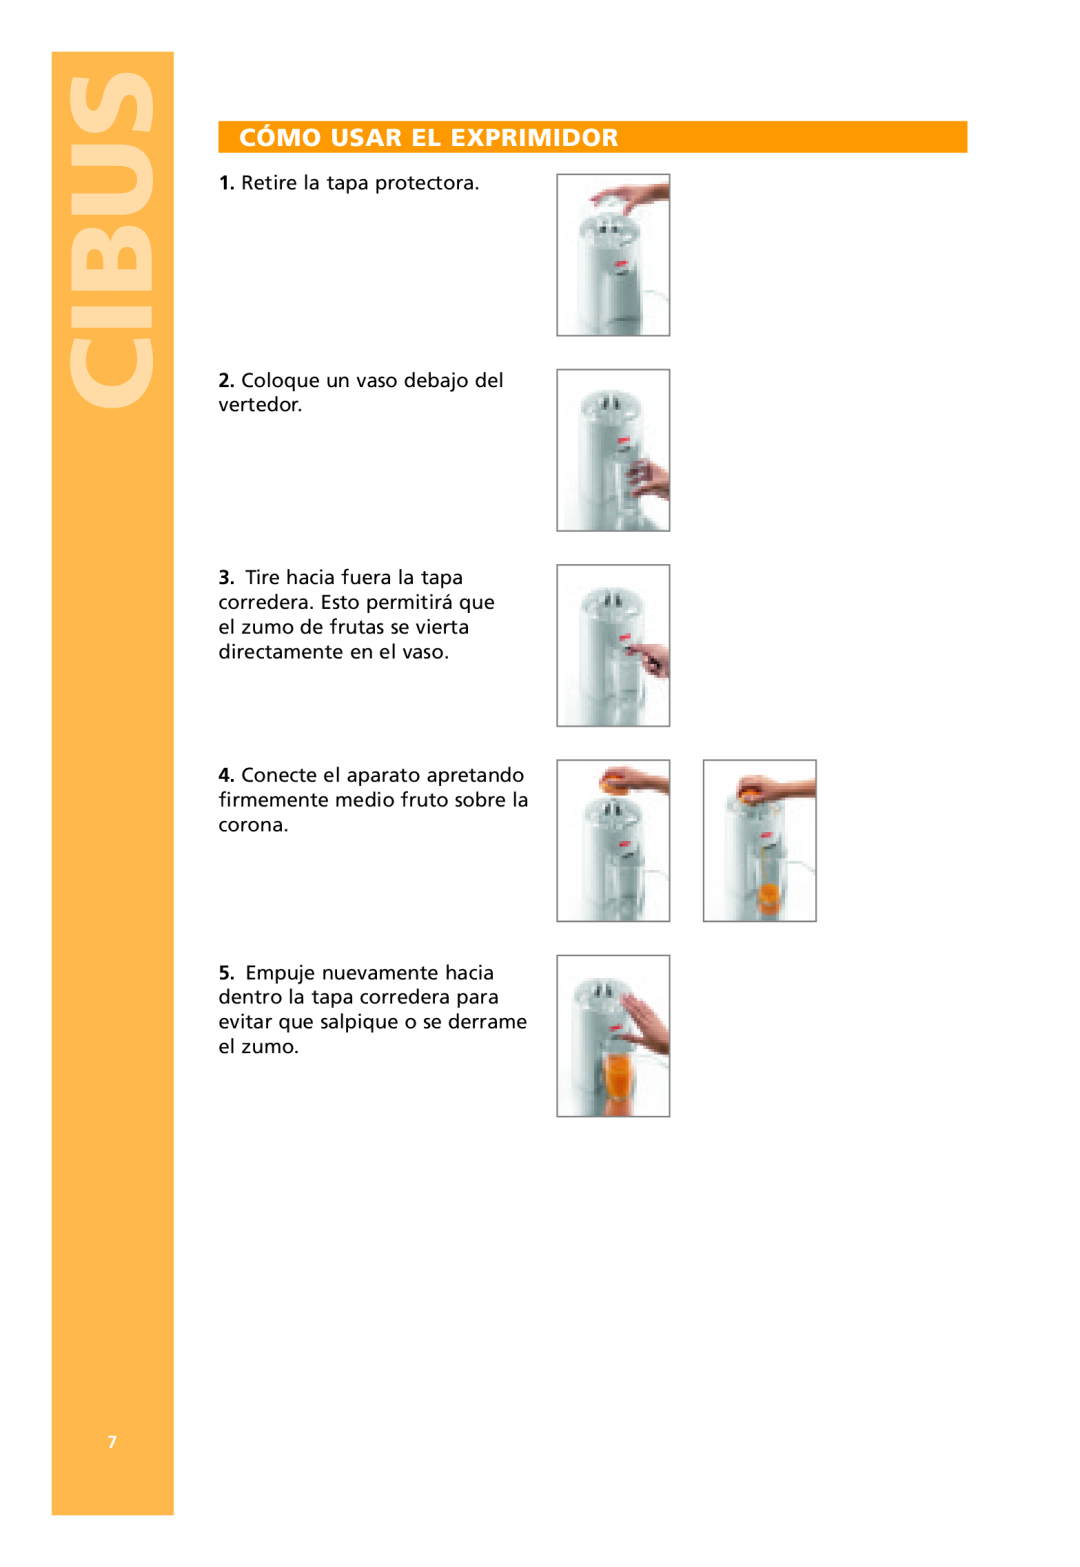 Bodum 3021 / 3022 manual Cibus, Cómo Usar El Exprimidor, Retire la tapa protectora 2. Coloque un vaso debajo del vertedor 